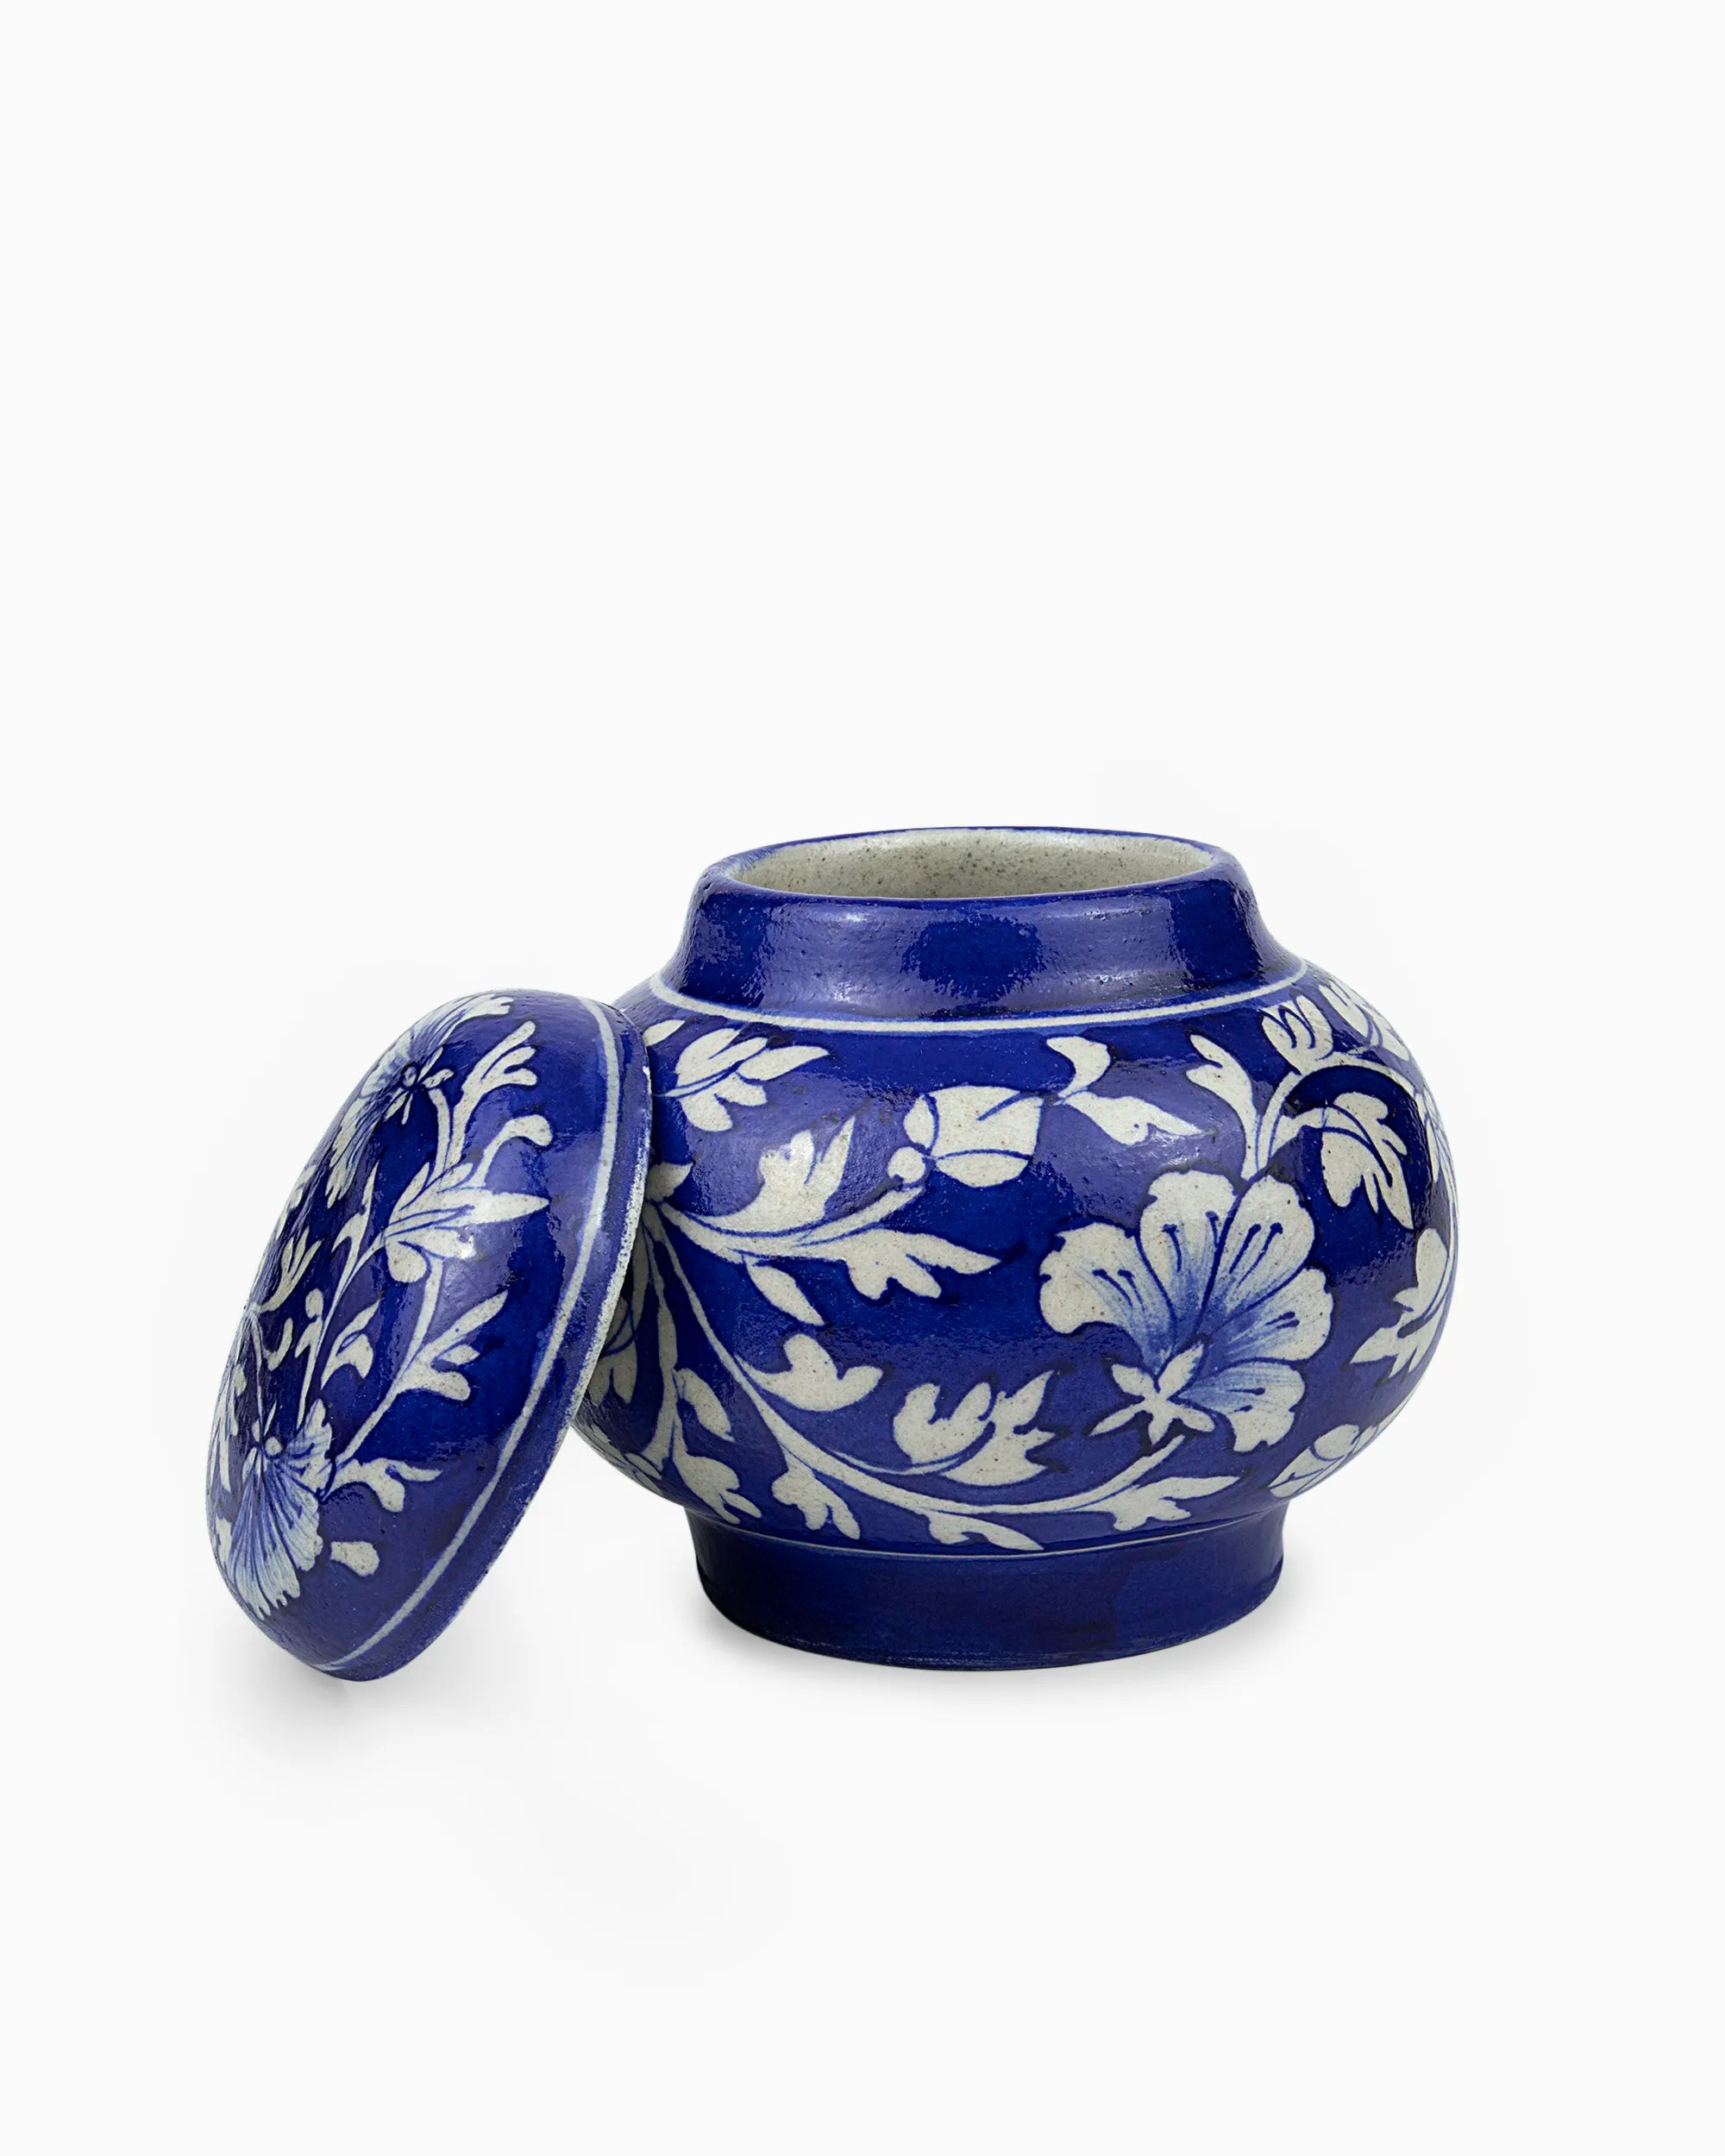 Decorative Ceramic Container Jar with Lid